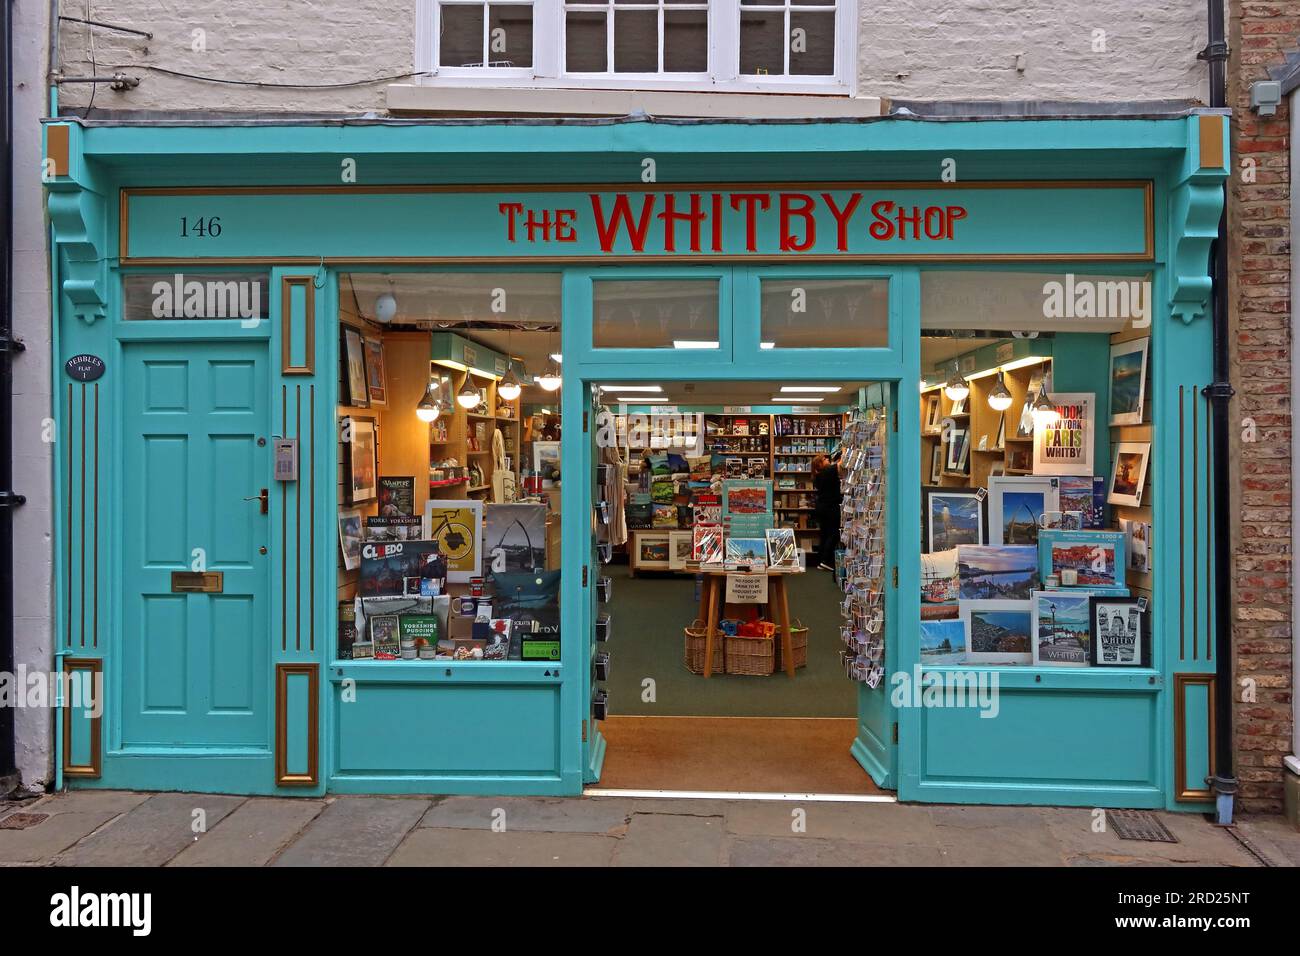 Boutique de tourisme Whitby librairie, The Whitby Shop, 146 Church St, Whitby, North Yorkshire, Yorkshire, Angleterre, Royaume-Uni, YO22 4DE Banque D'Images